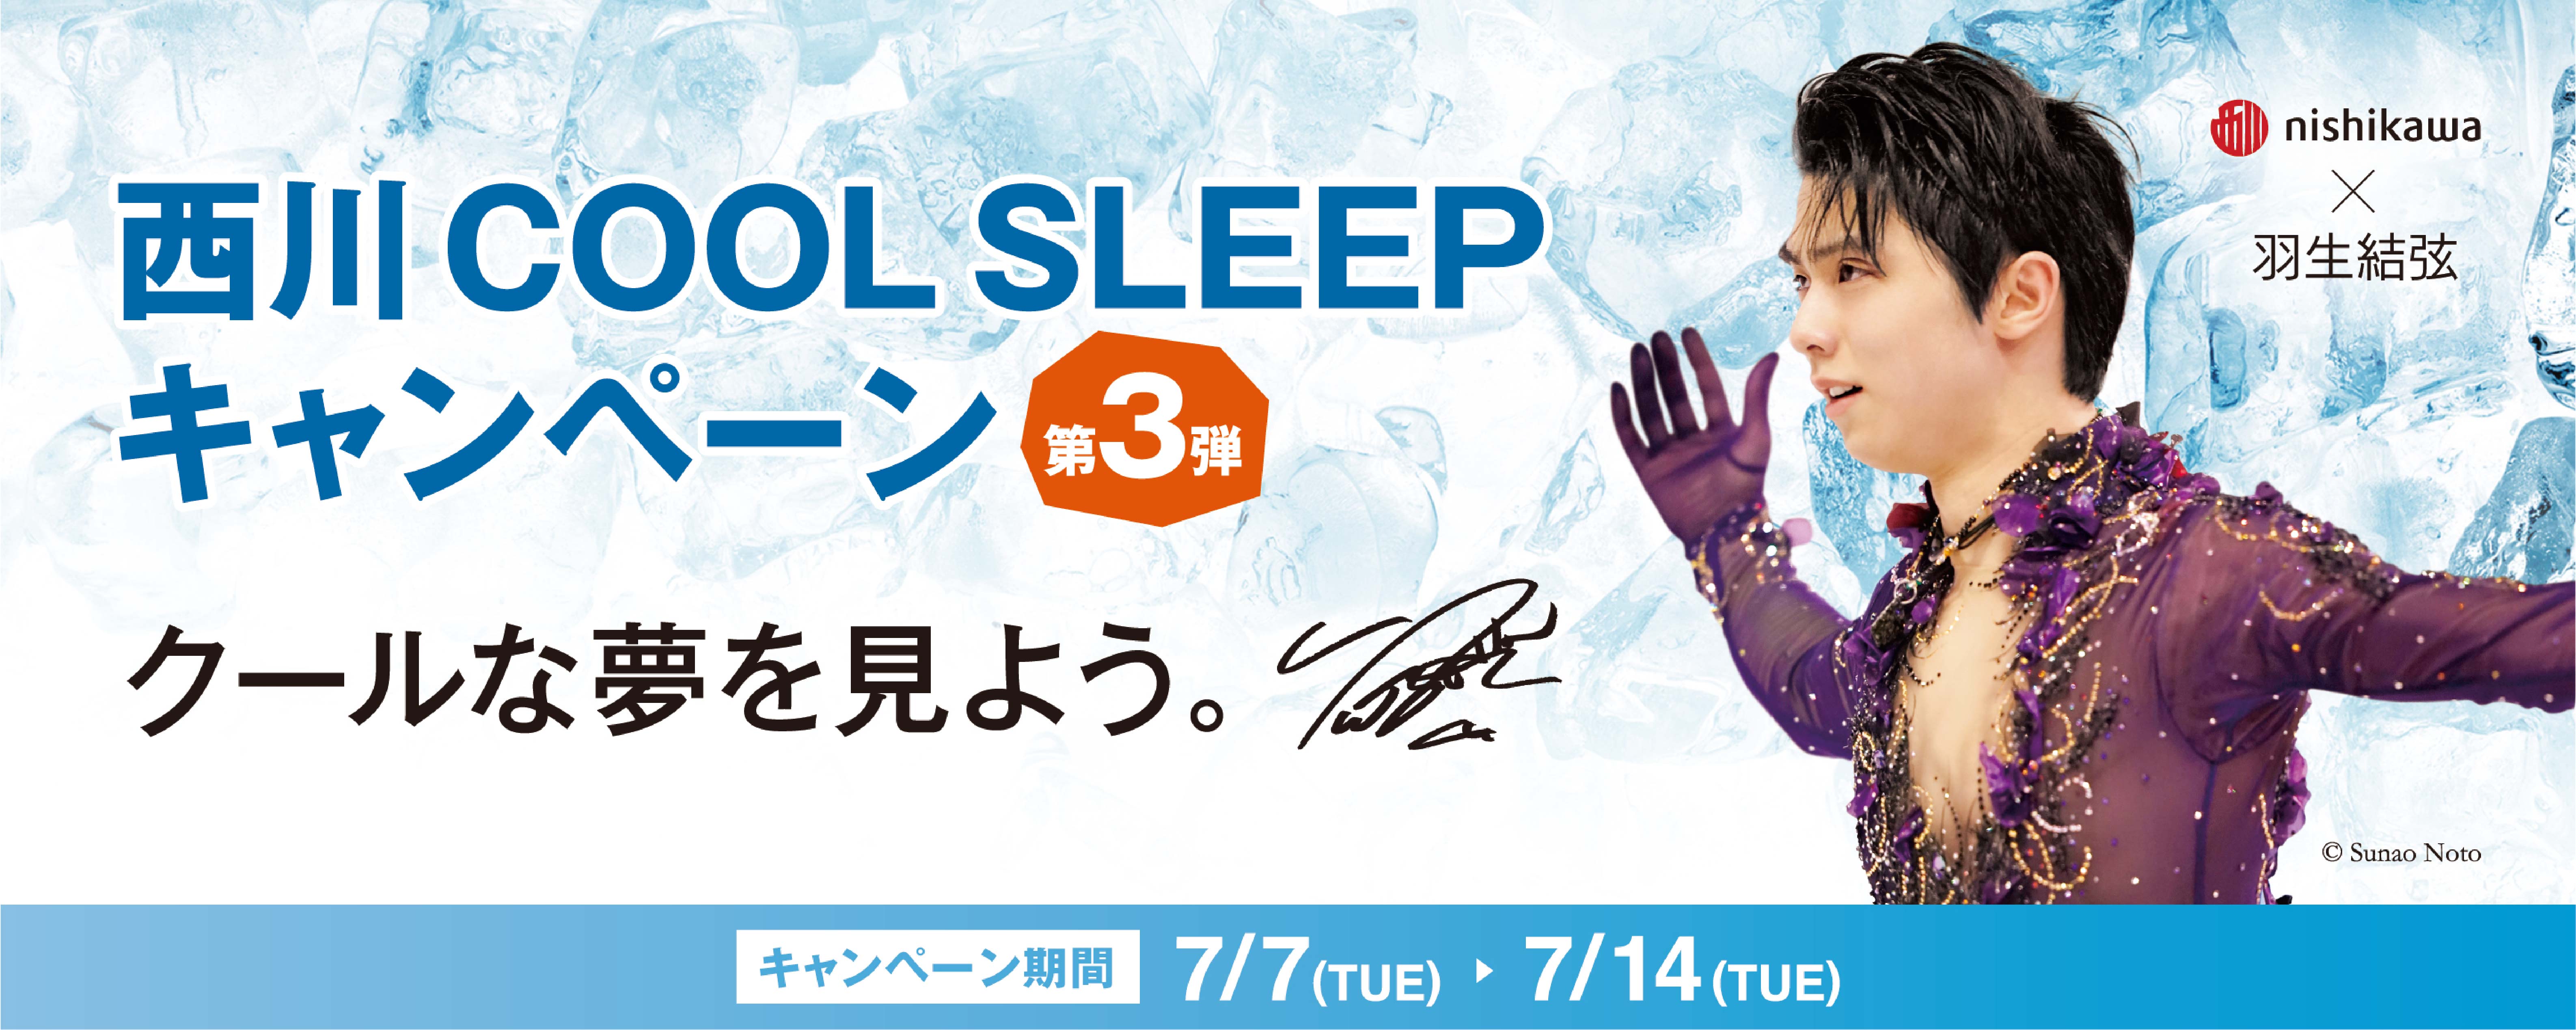 羽生結弦選手を起用した『西川 COOL SLEEP キャンペーン第3弾』を7月7 